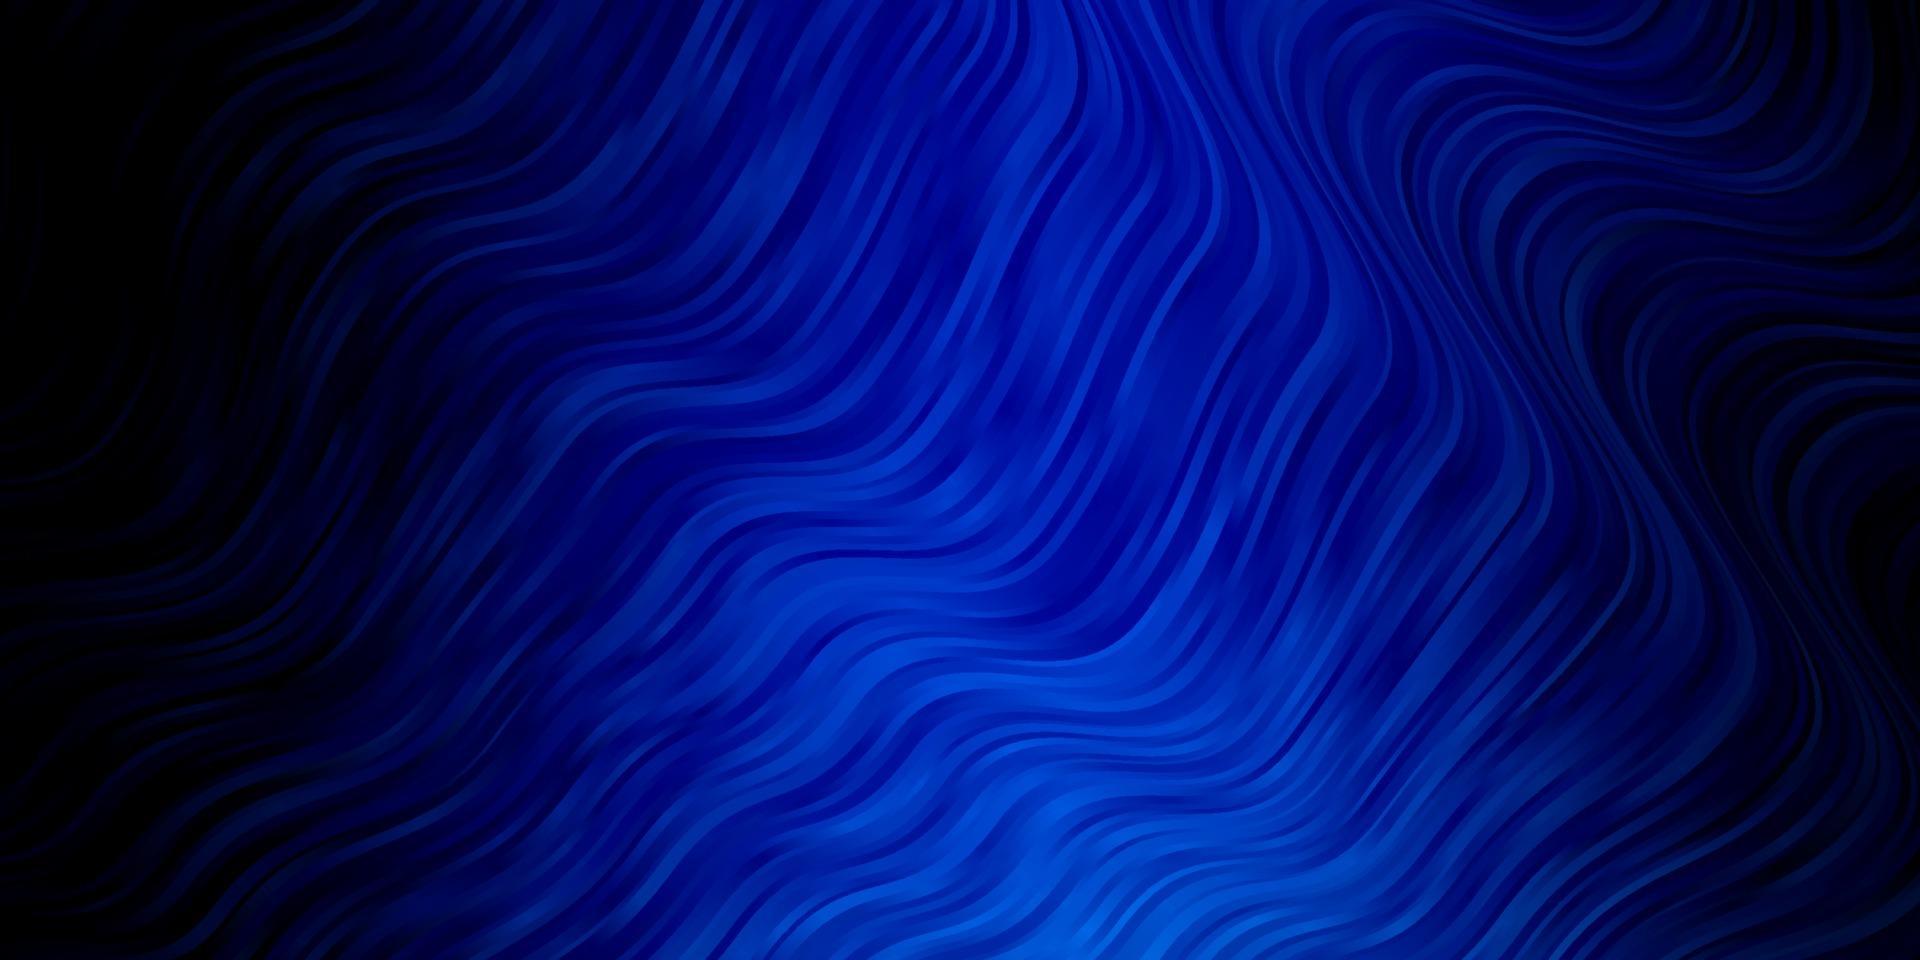 Fondo de vector azul oscuro con líneas curvas.